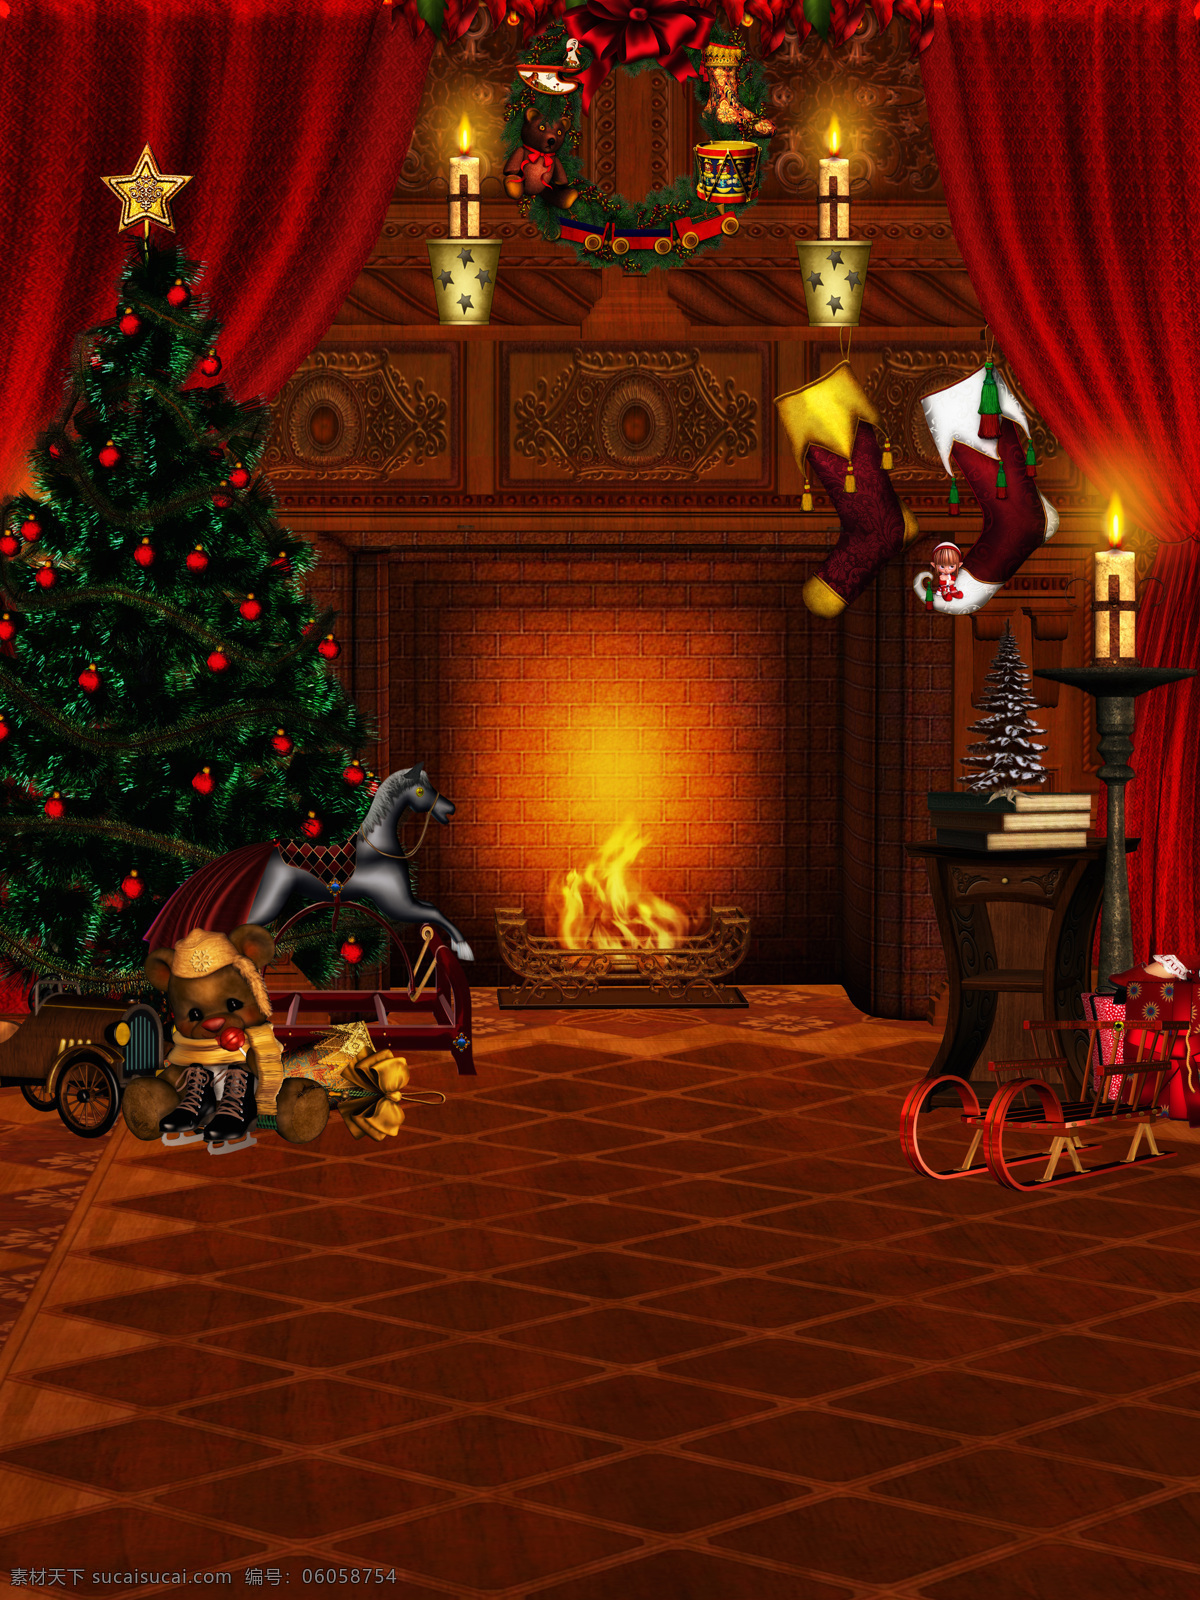 圣诞 夜 圣诞节 喜庆 新年素材 节日素材 平安夜 圣诞树 小熊 圣诞礼物 壁炉 节日庆典 生活百科